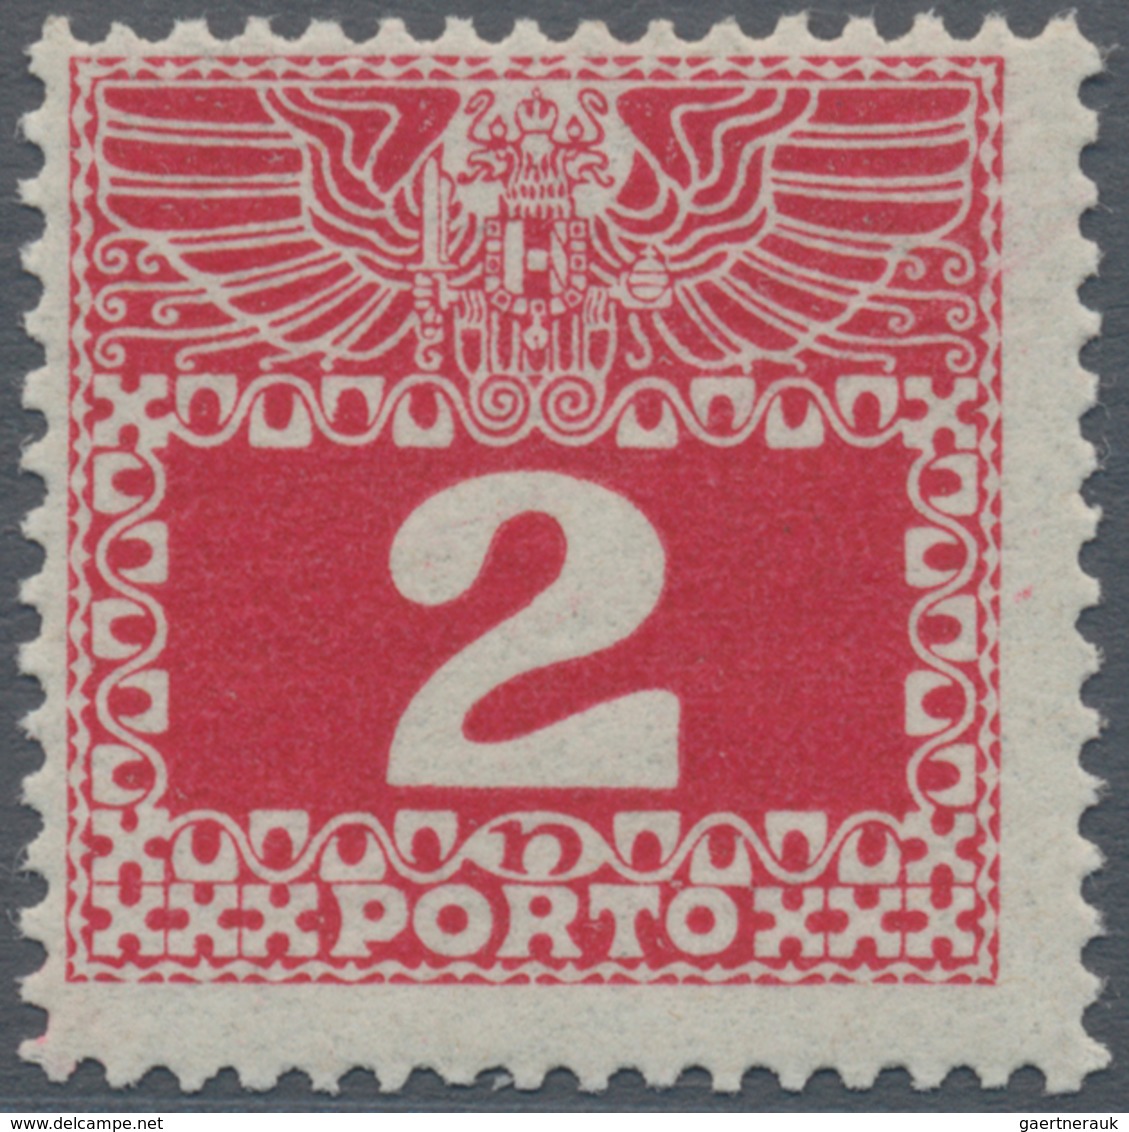 Österreich - Portomarken: 1909, 1 H. Bis 100 H., Dünnes, Fast Durchsichtiges Papier, Komplette Serie - Portomarken